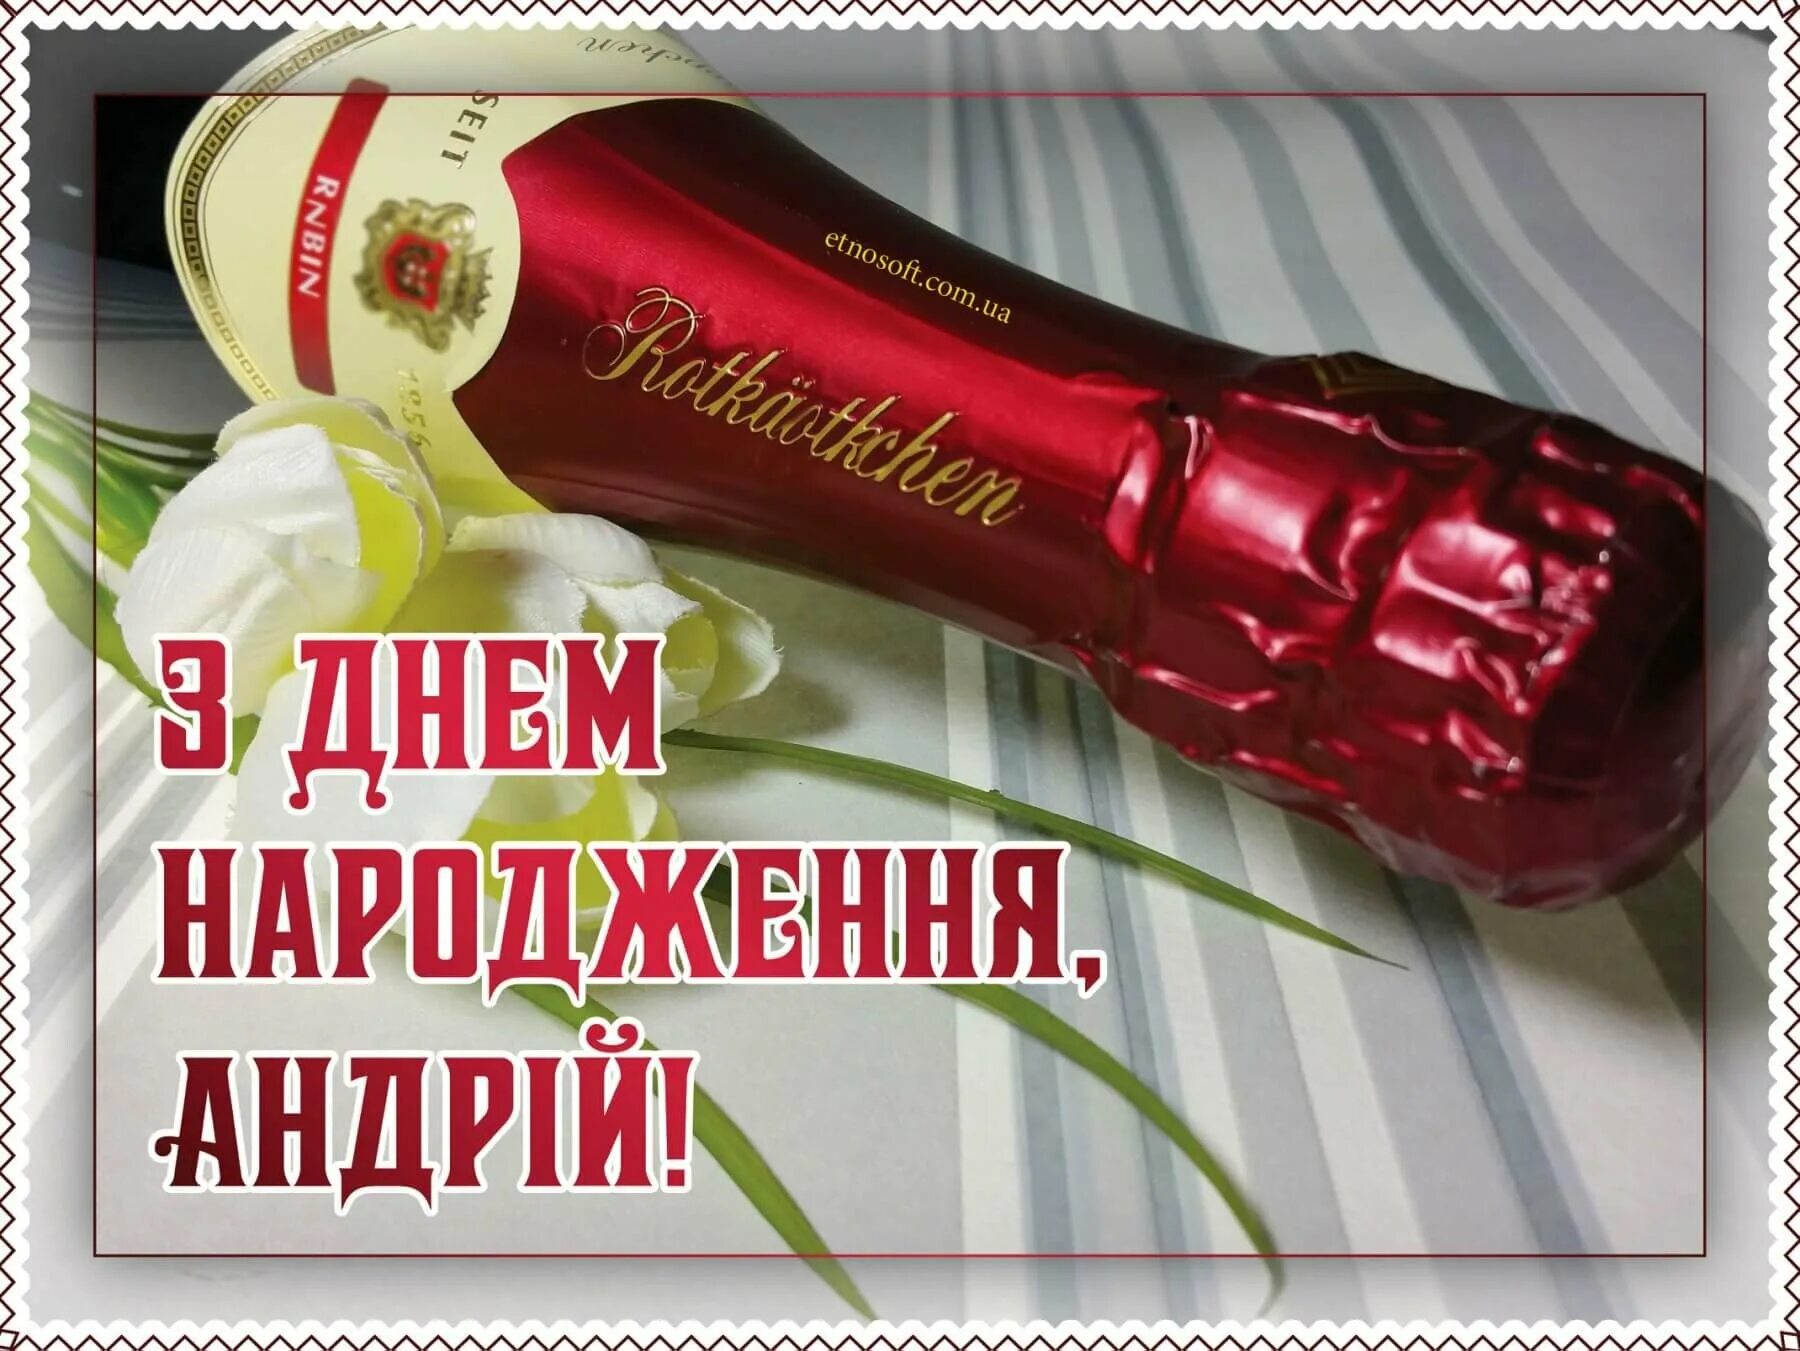 З днем народження. Привітання з днем народження Андрія. Поздравления с днём рождения на украинском языке. С днём рождения мужчине на украинском языке.